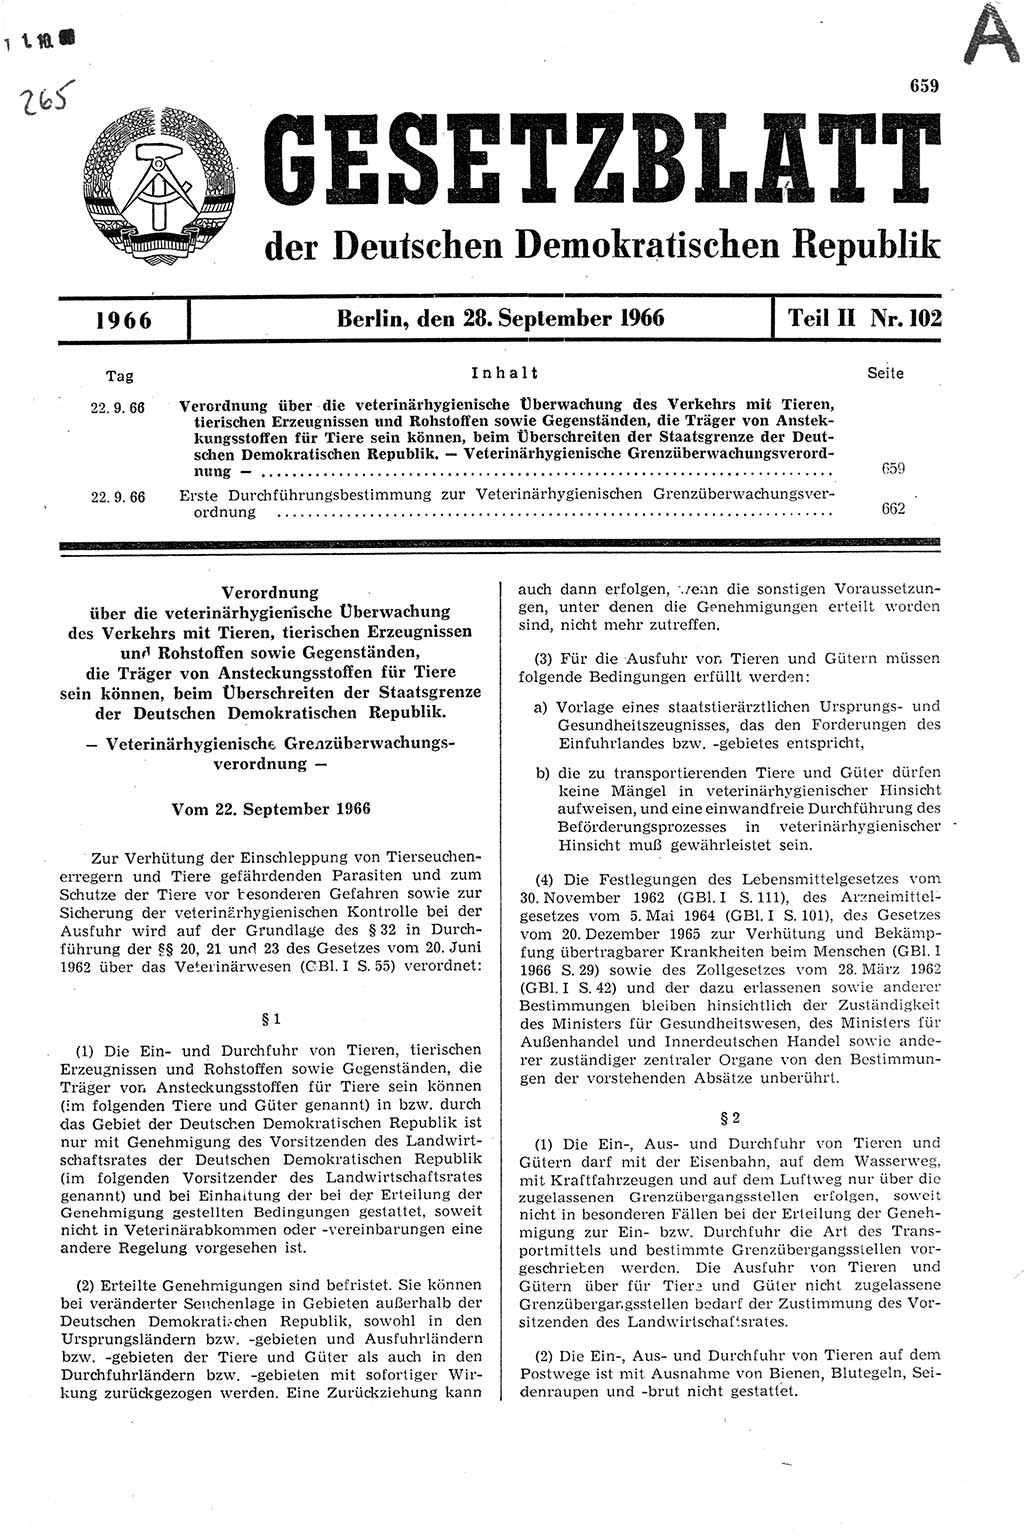 Gesetzblatt (GBl.) der Deutschen Demokratischen Republik (DDR) Teil ⅠⅠ 1966, Seite 659 (GBl. DDR ⅠⅠ 1966, S. 659)